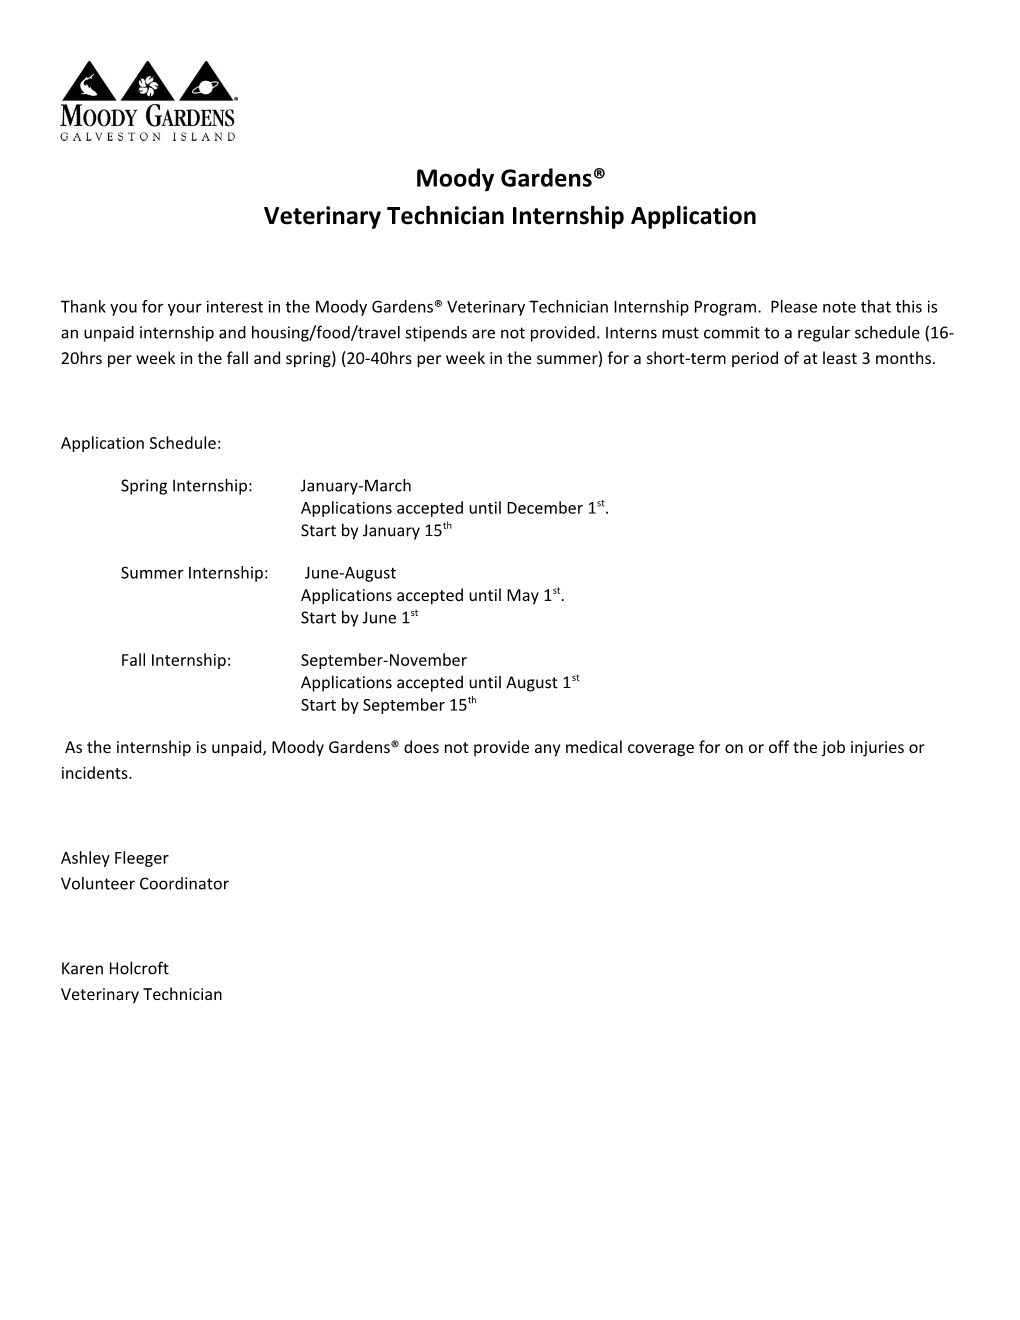 Moody Gardens Veterinary Technician Internship Application